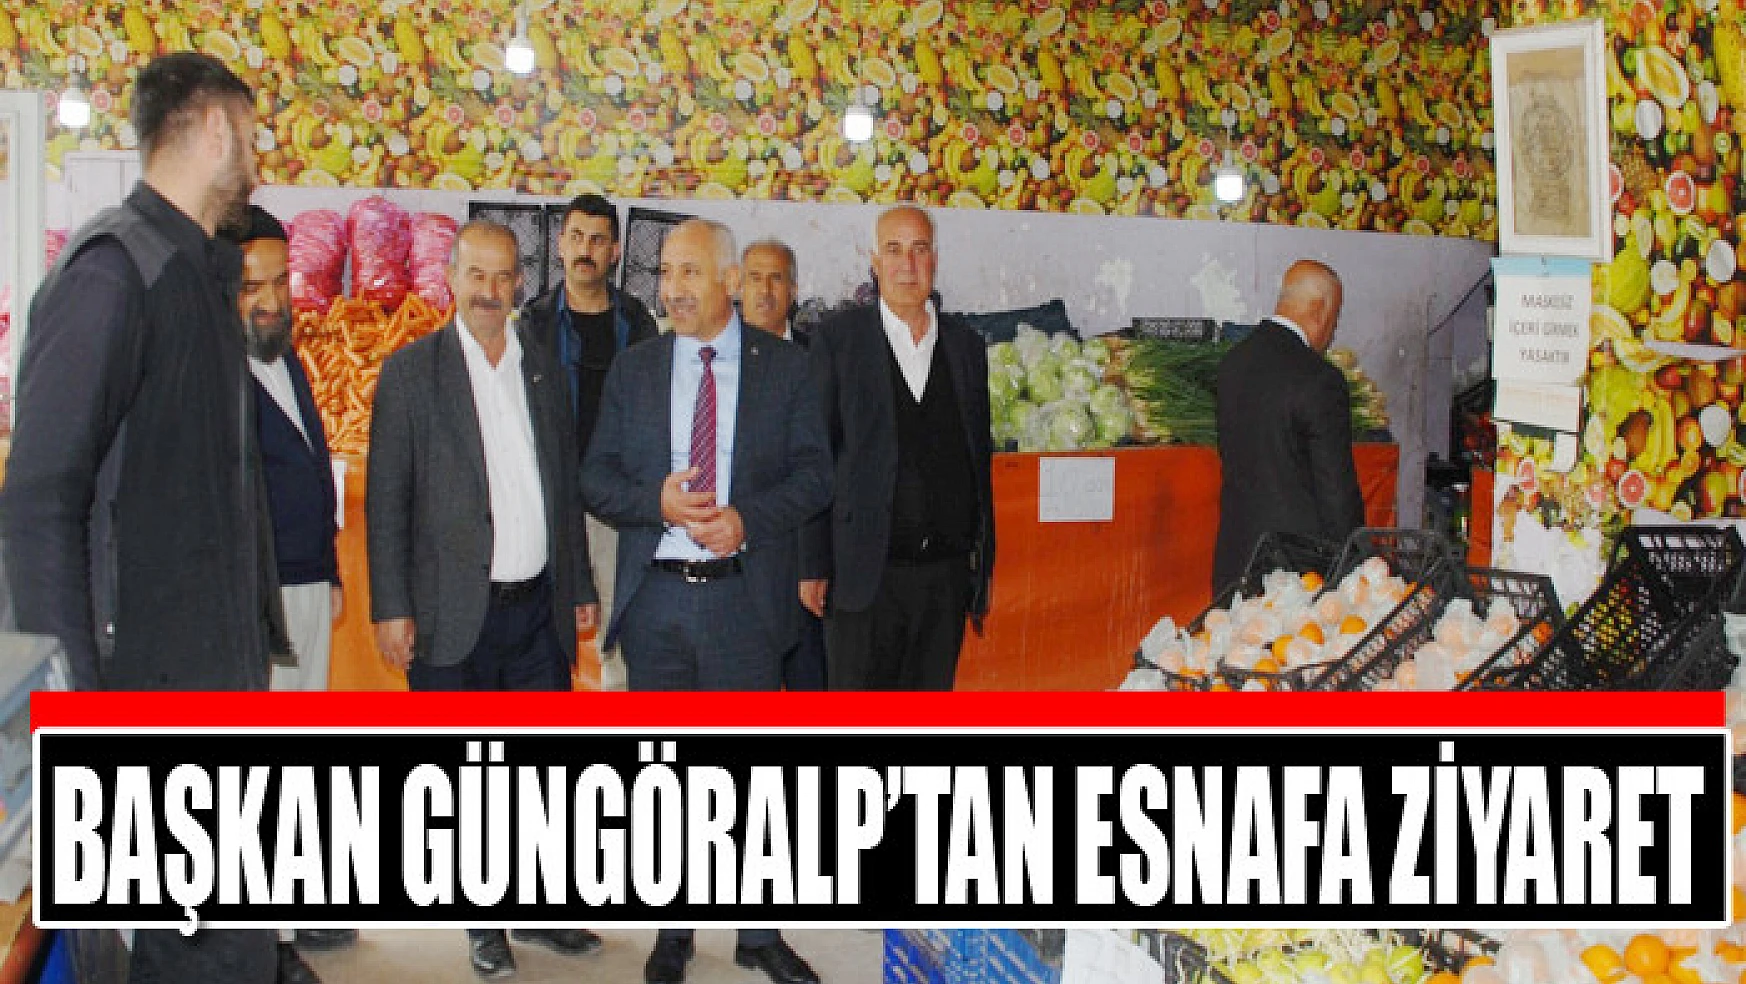 MHP İl Başkanı Güngöralp'tan Gevaş esnafına ziyaret